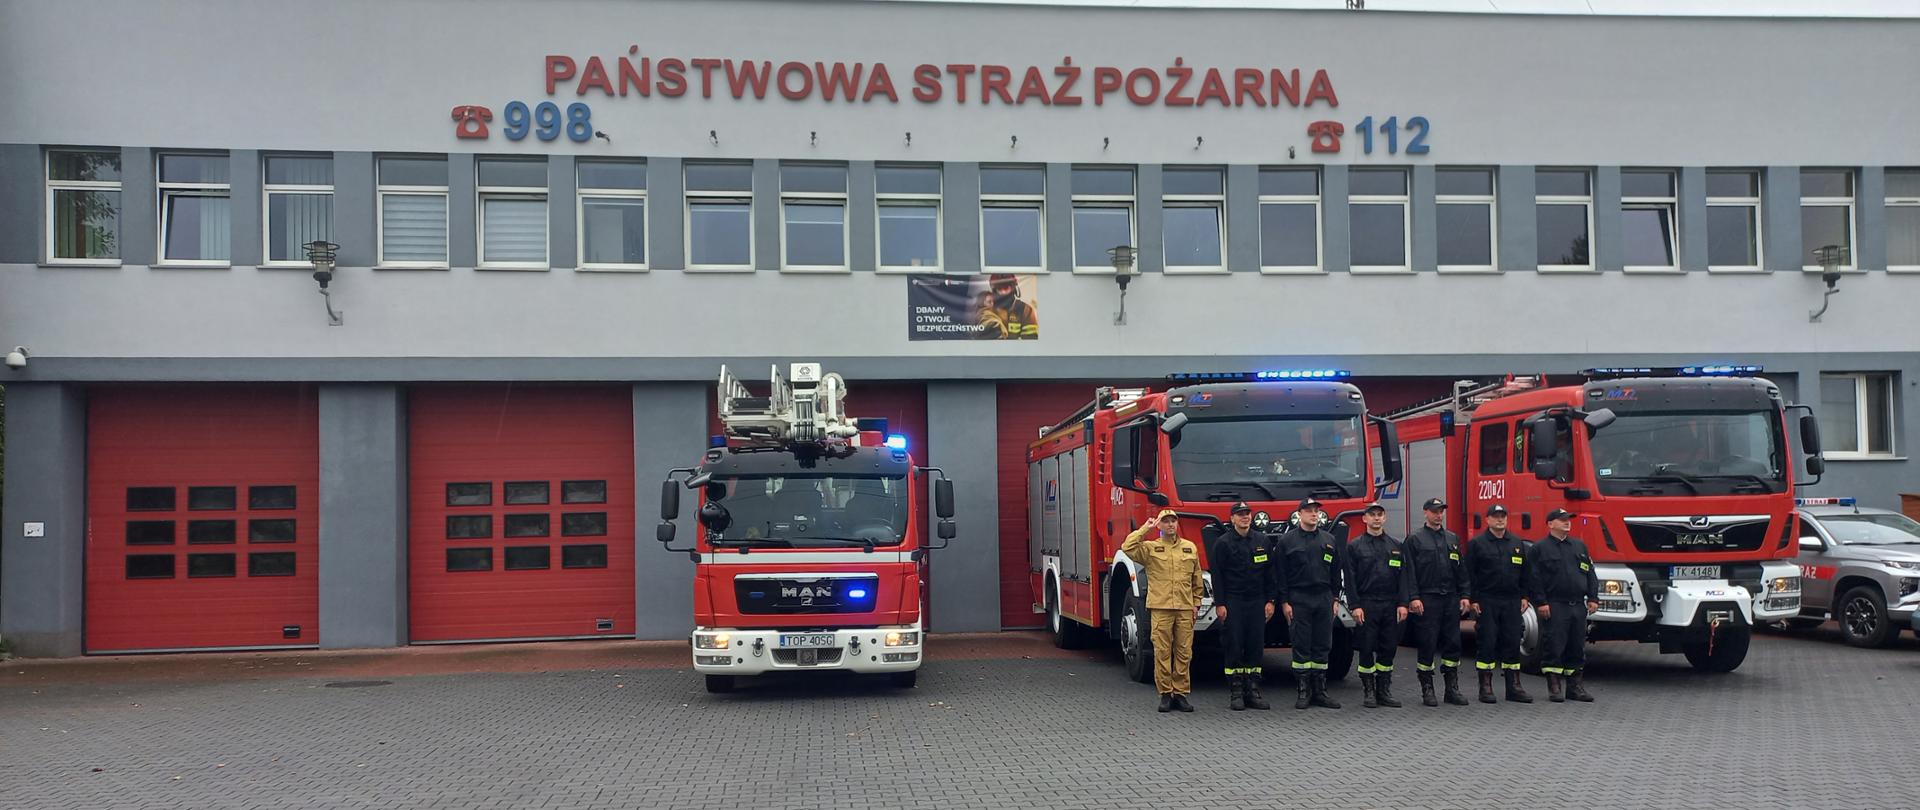 Na zdjęciu widać strażaków PSP salutujących w celu upamiętnienia rocznicy 79 Powstania Warszawskiego.